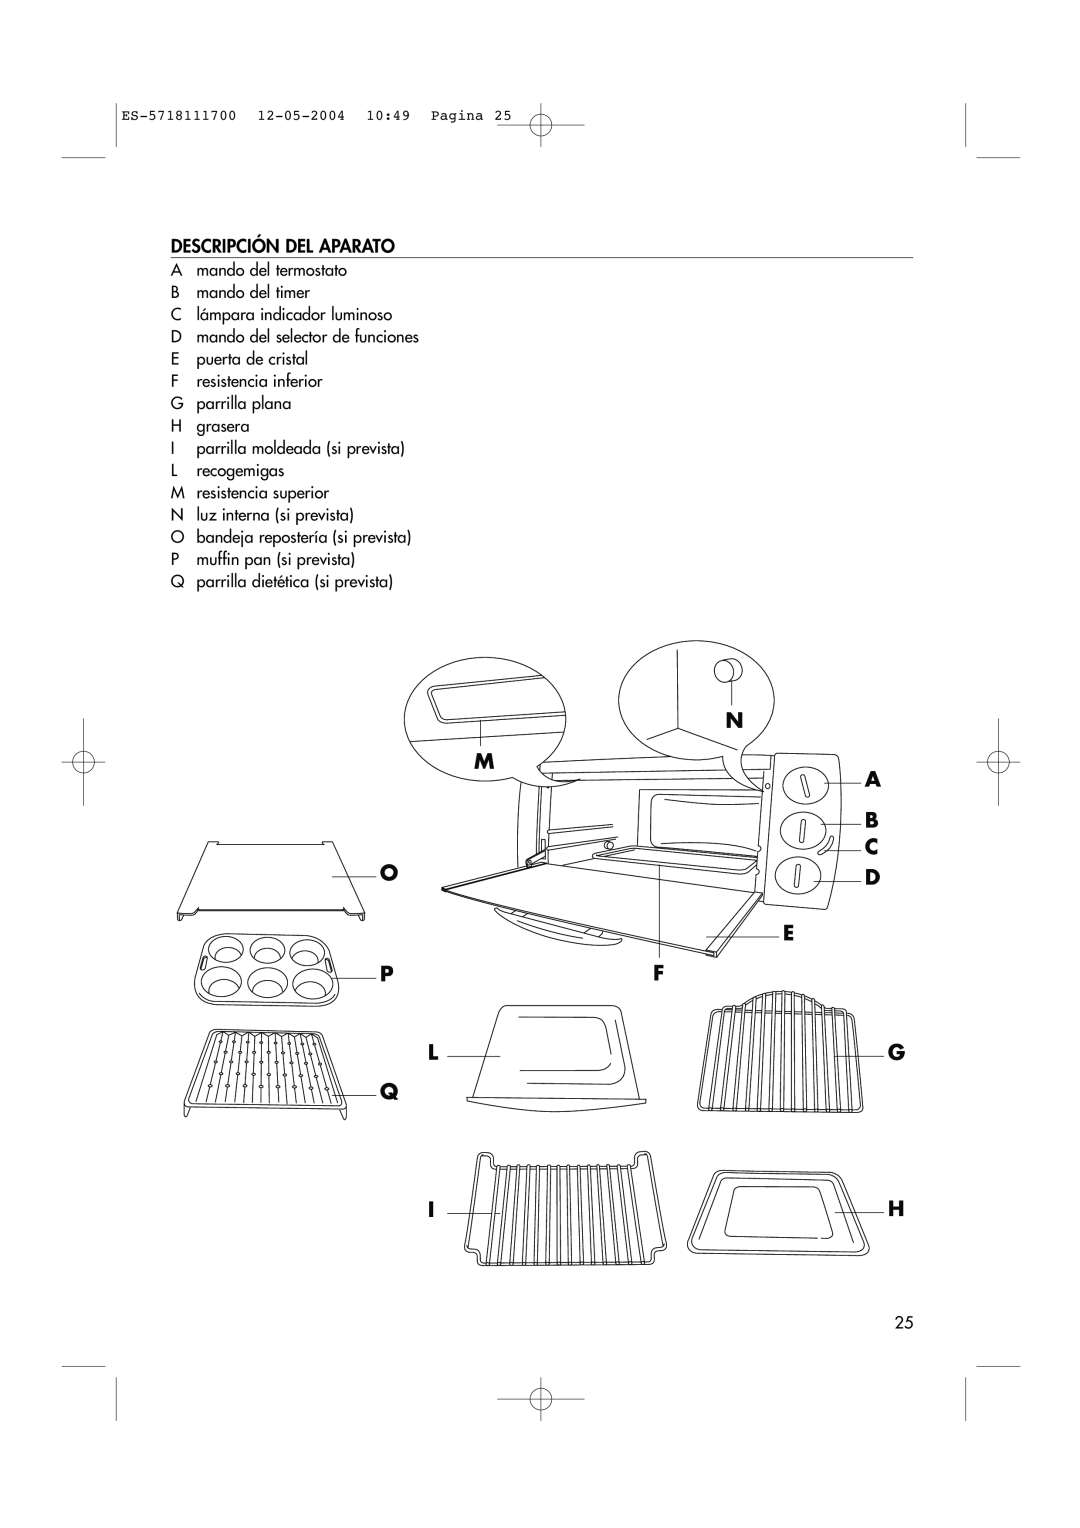 DeLonghi EO1200 Series manual Descripción Del Aparato, N M A B C, E Pf Lg Q Ih 